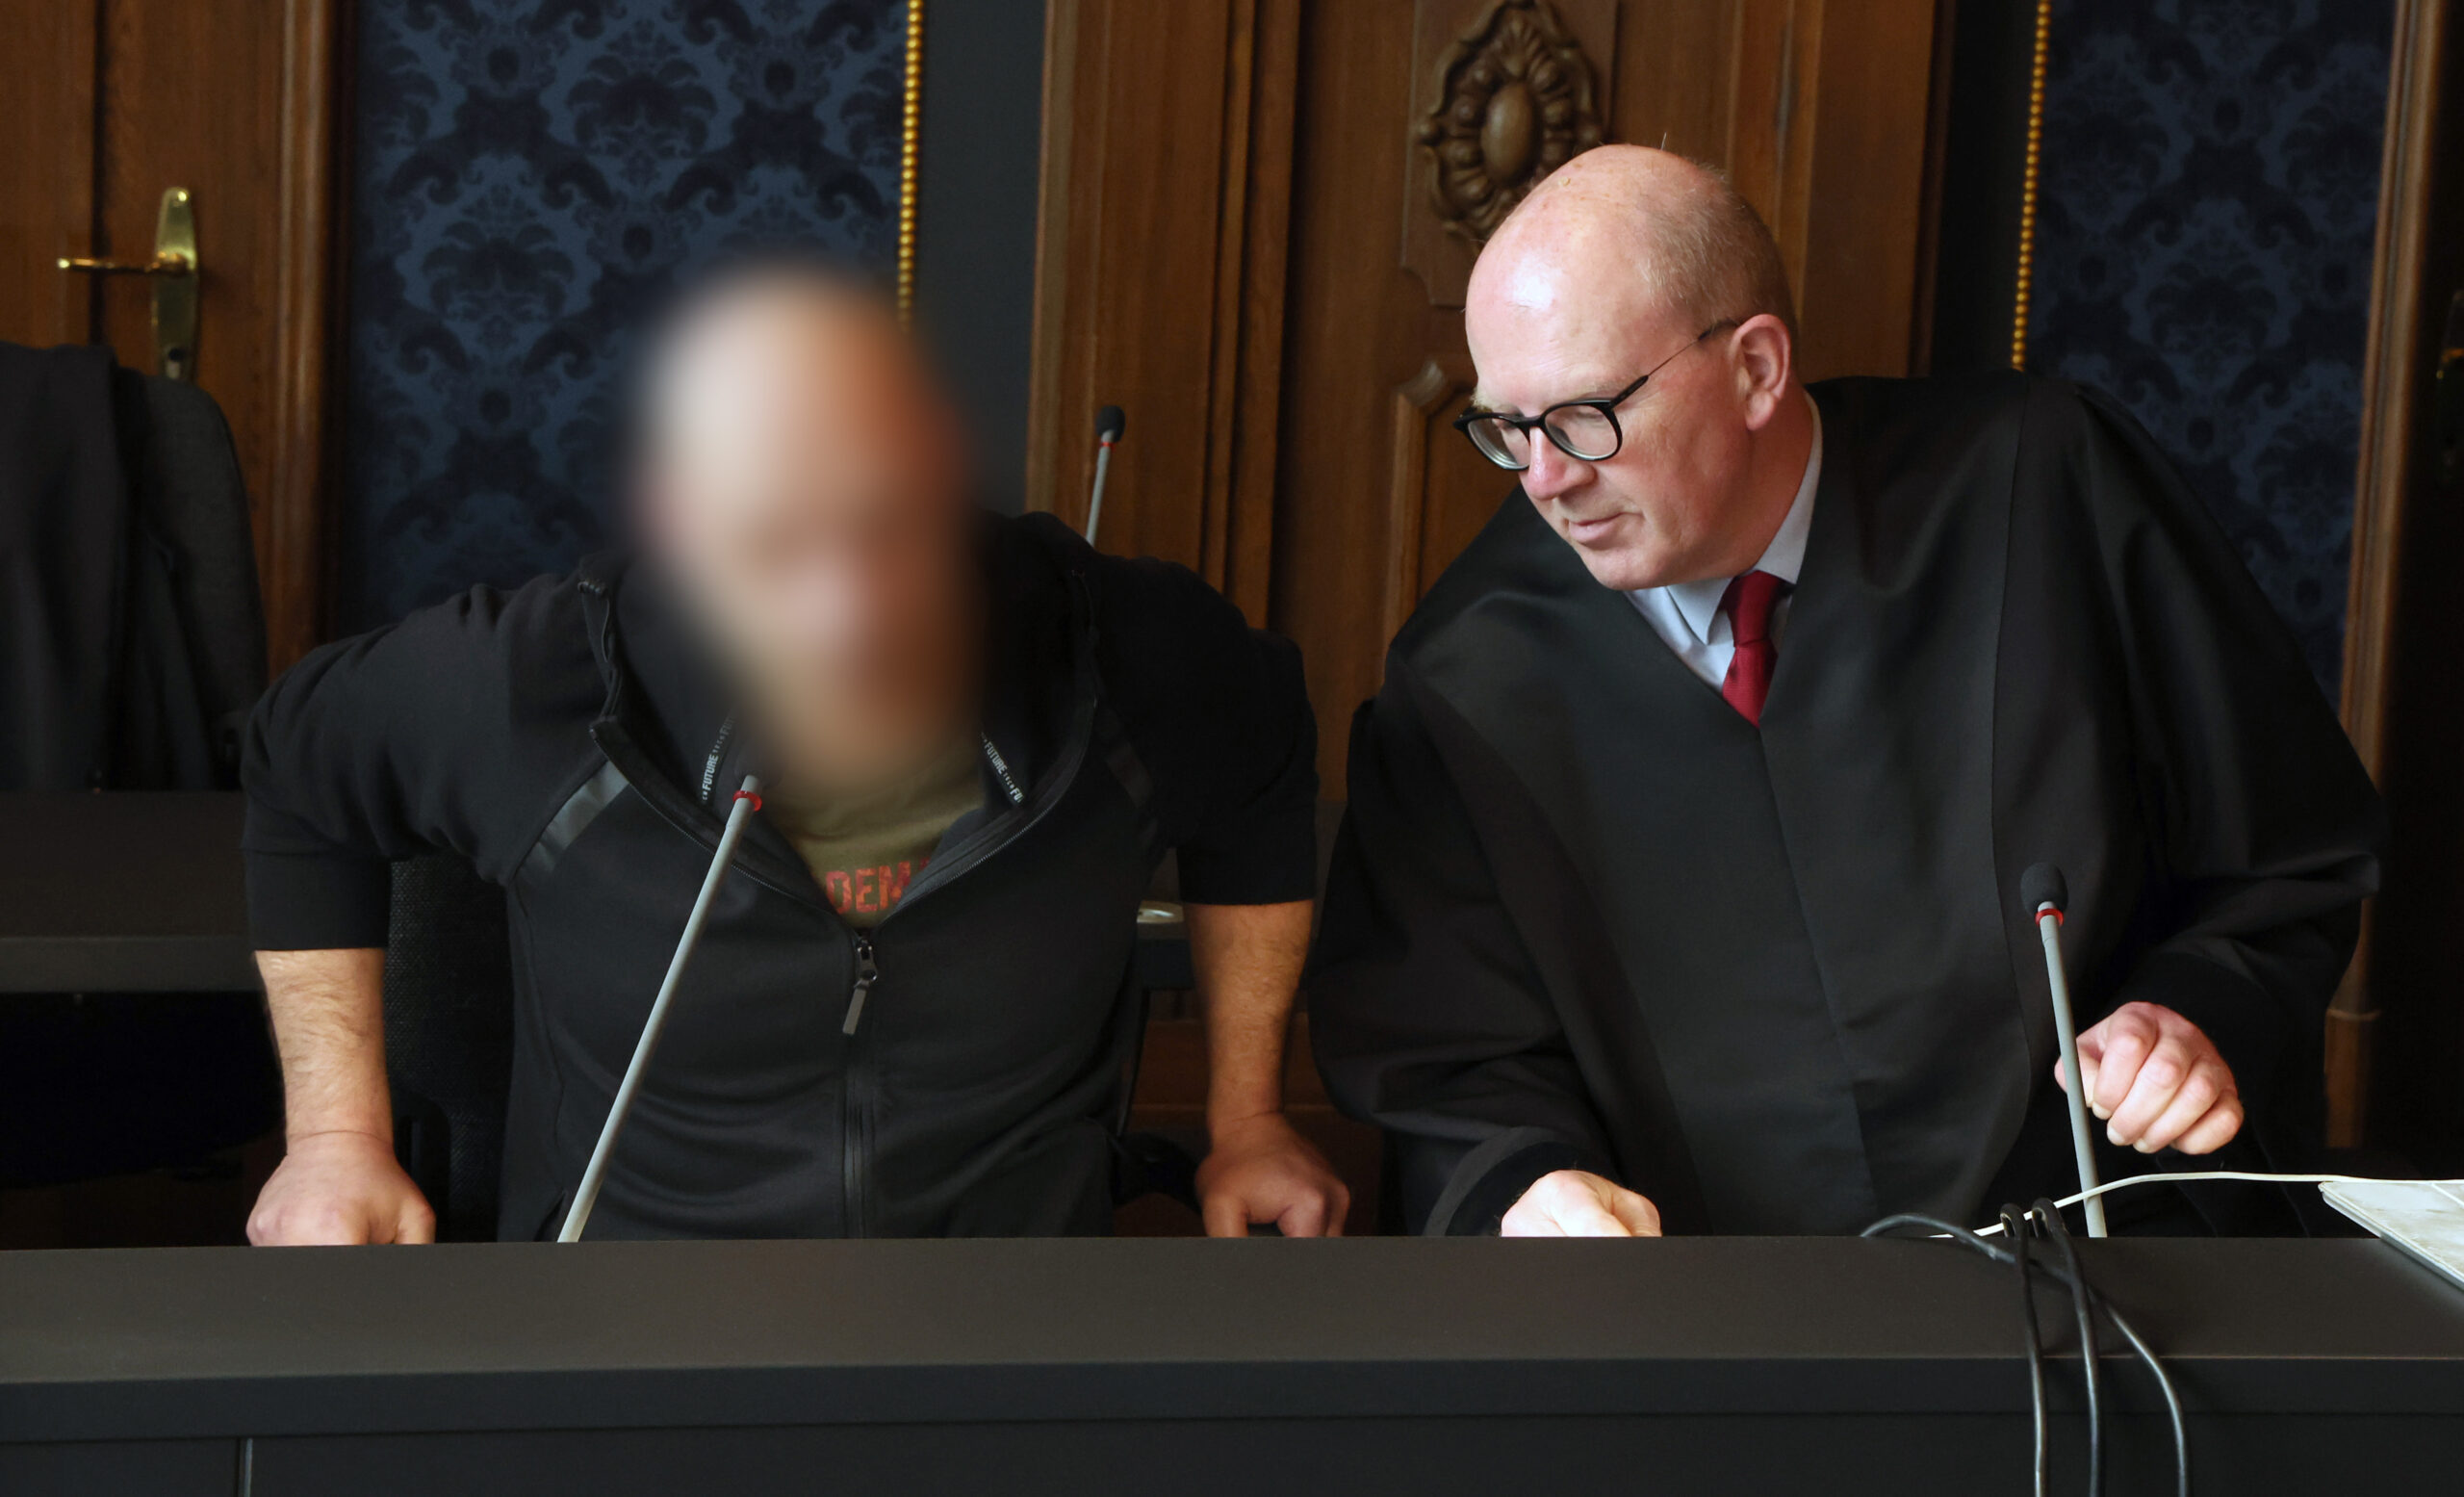 Der Angeklagte (l-r) im Totschlagprozess und Andreas Roter, Rechtsanwalt, nehmen vor dem Prozessauftakt im Saal des Landgerichts Schwerin Platz.